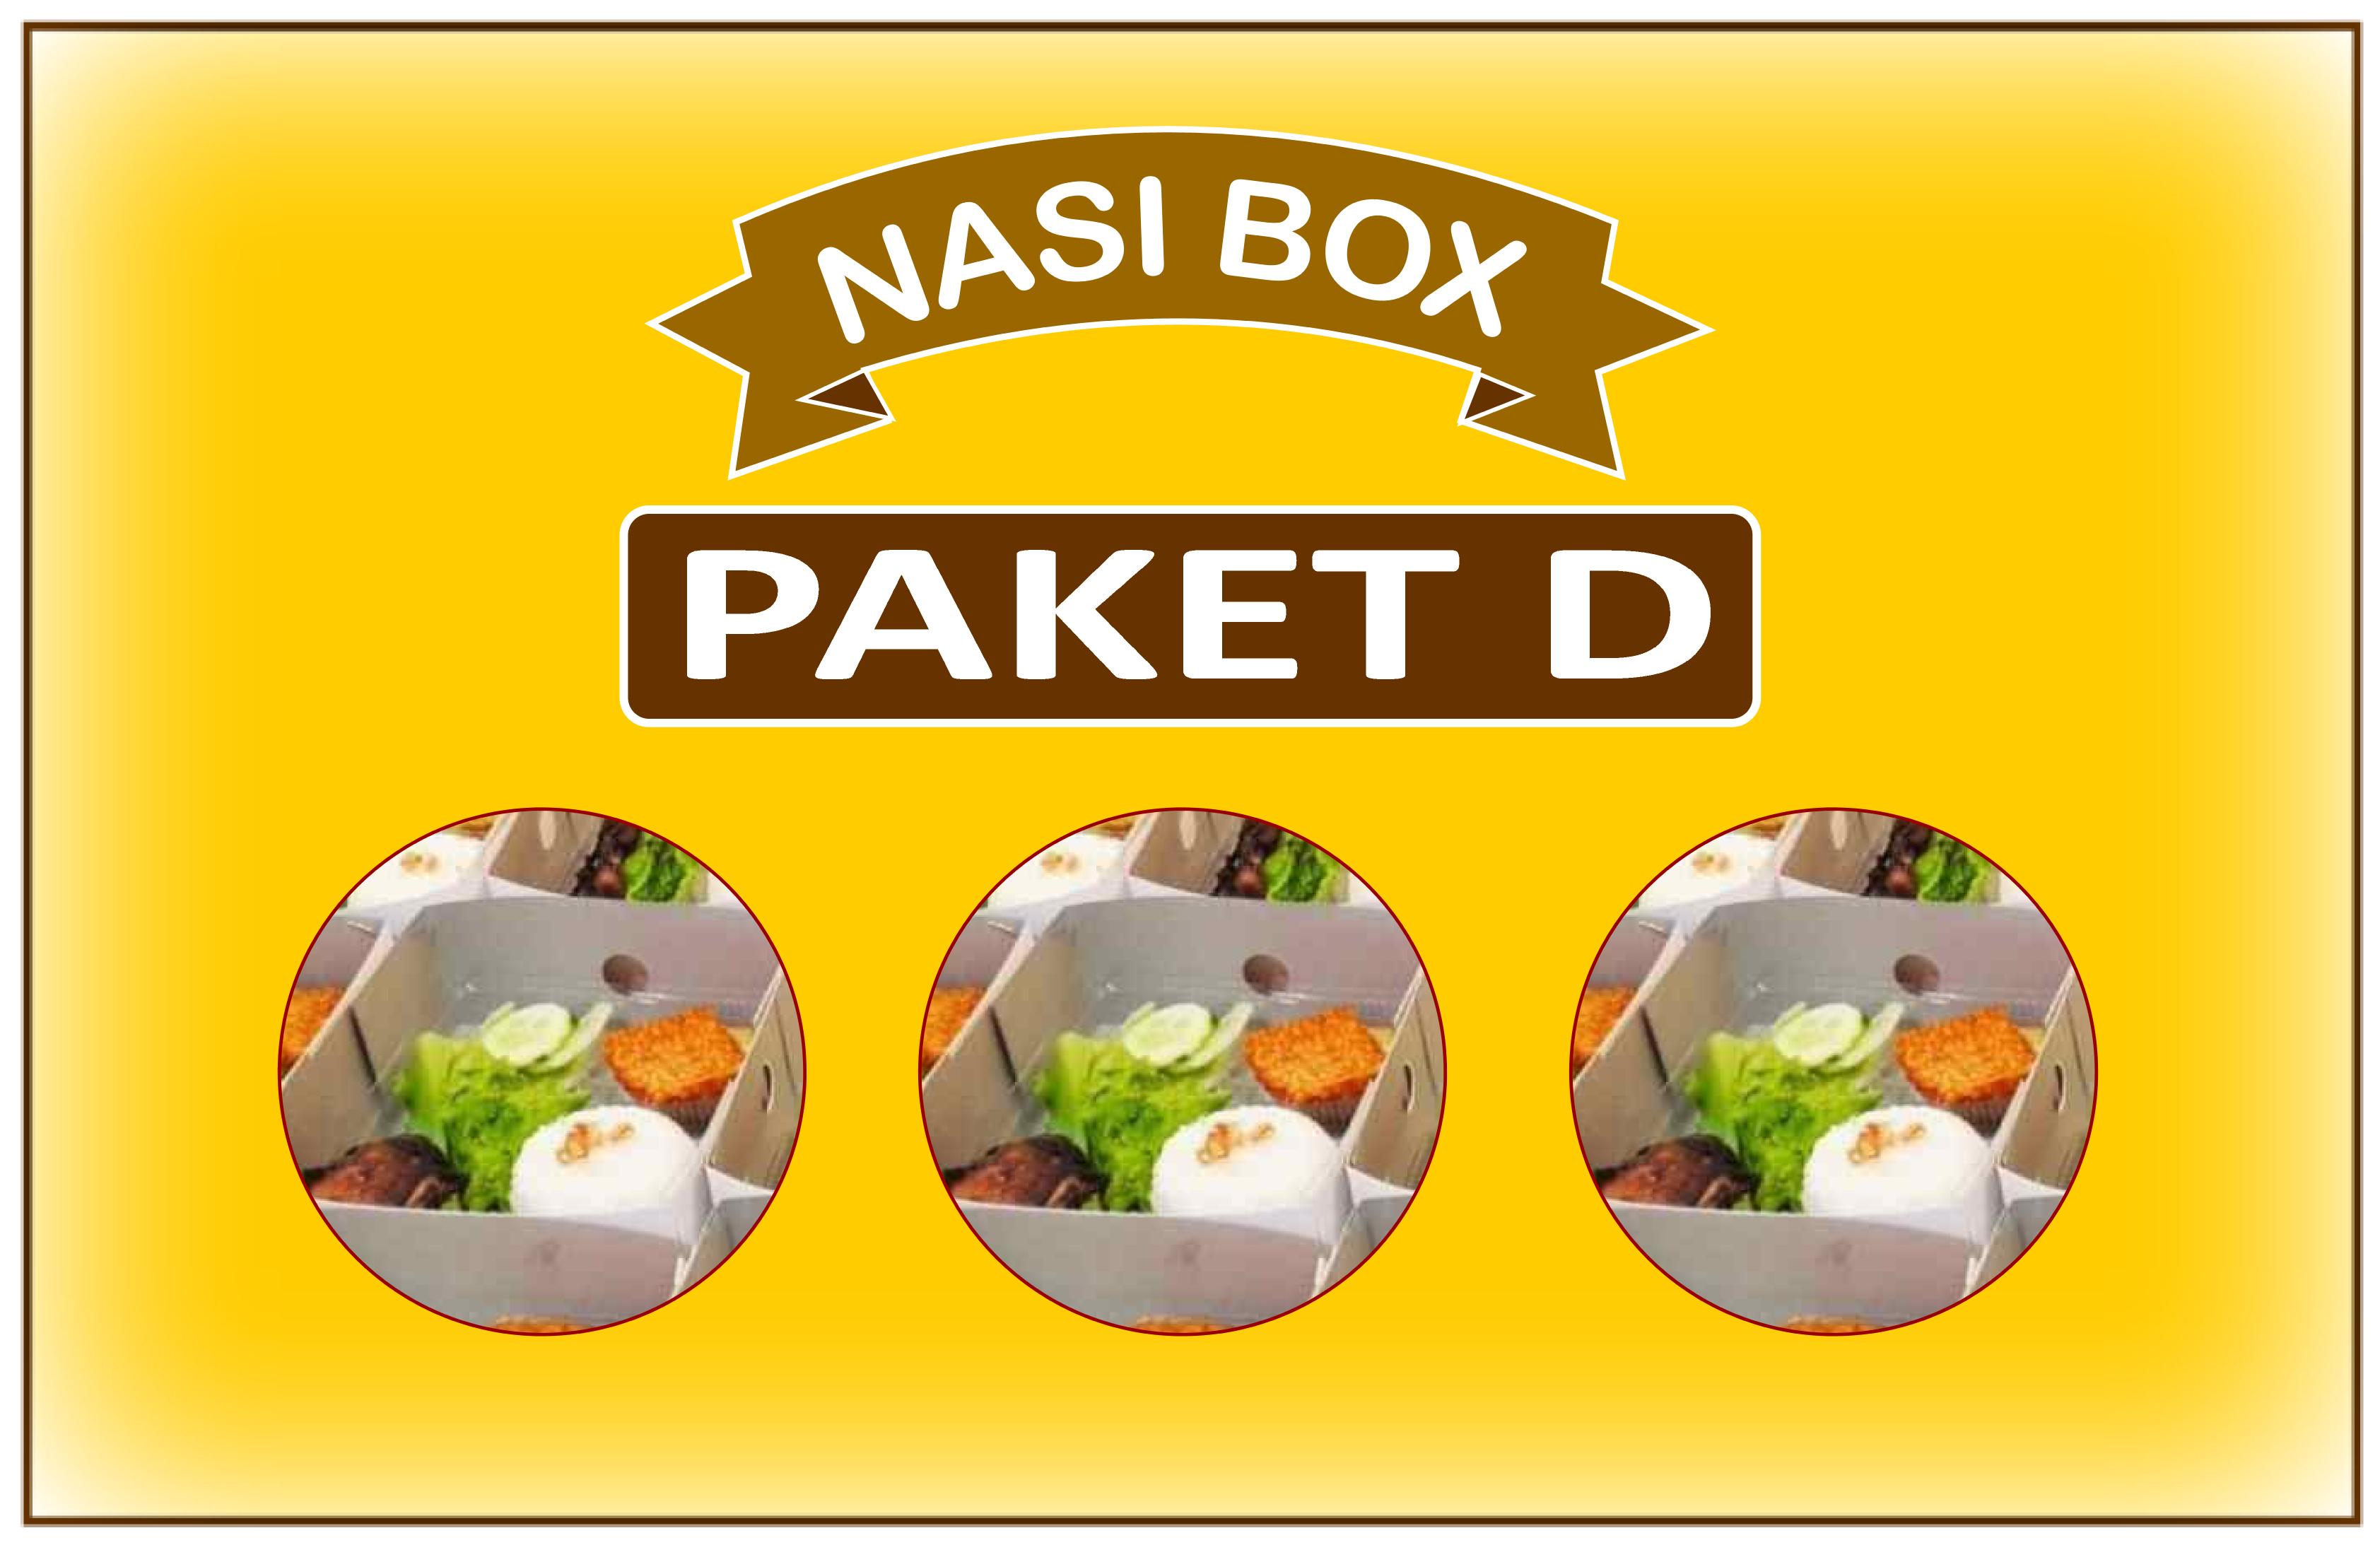 NASI BOX PAKET D